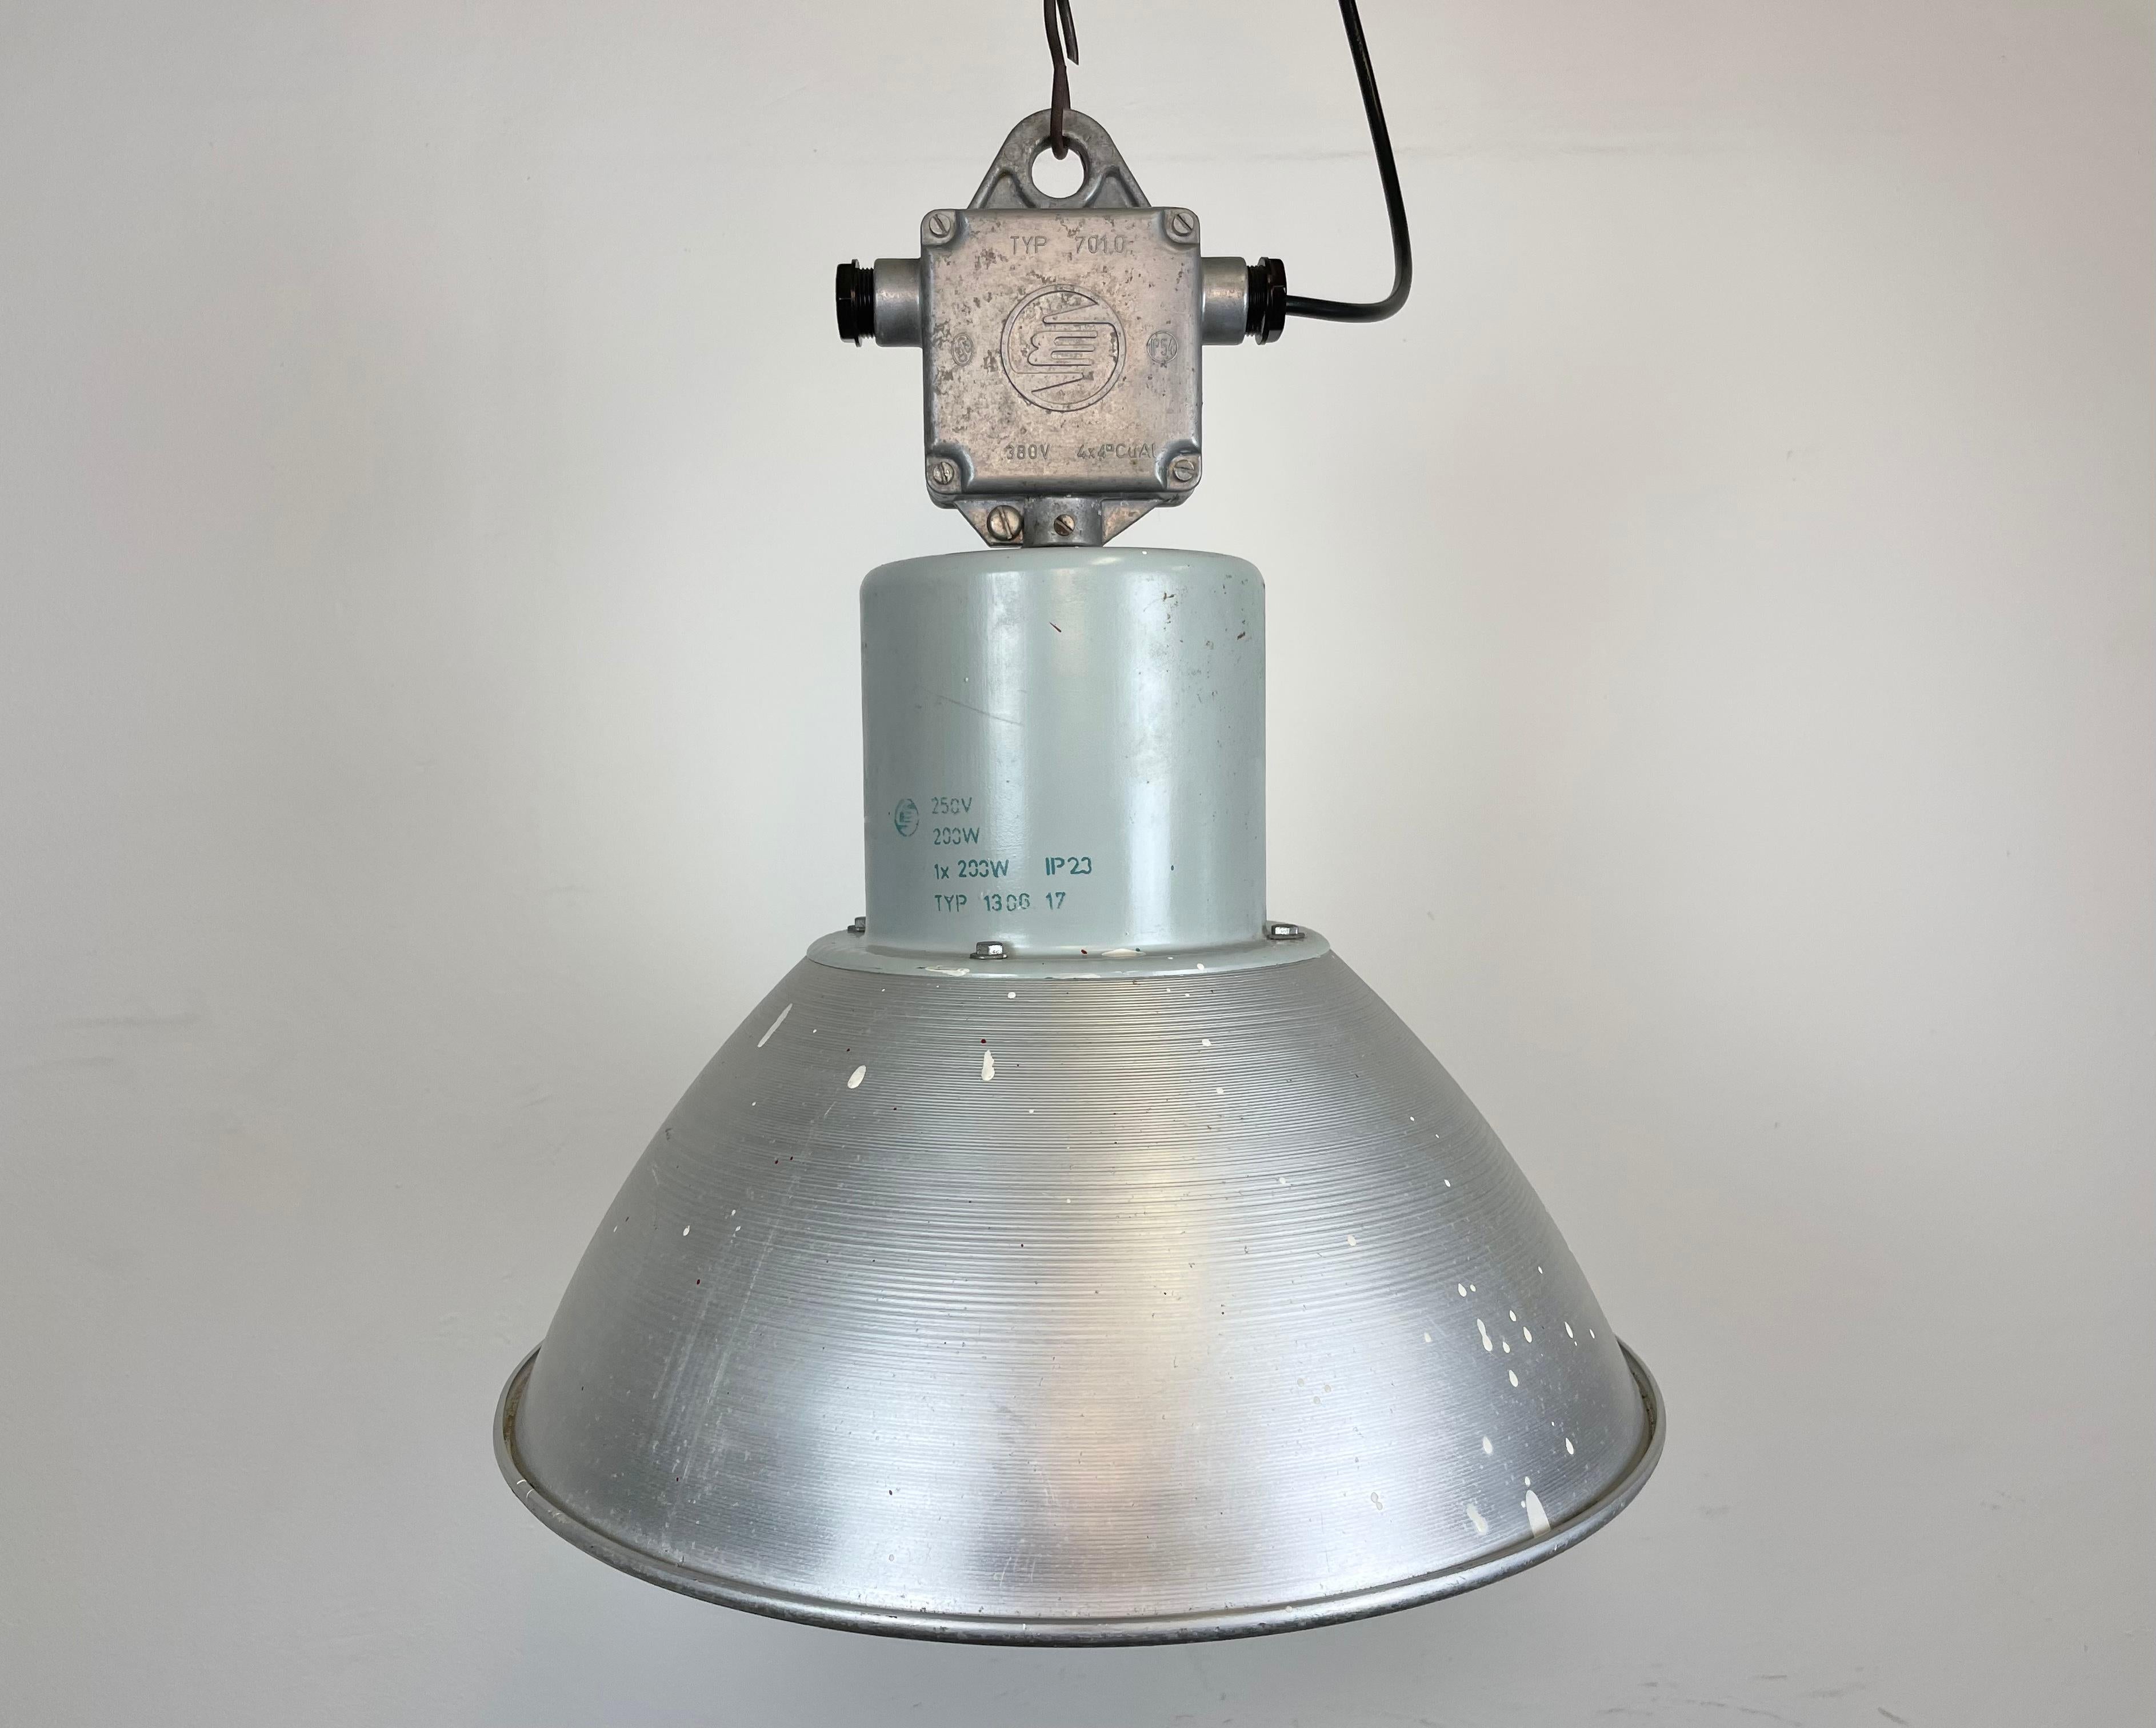 Diese Hängeleuchte wurde von Elektrosvit hergestellt und ursprünglich in einer Fabrik in der ehemaligen Tschechoslowakei in den 1960er Jahren verwendet. Die Leuchte besteht aus einem Lampenschirm aus Aluminium und einem Kopf aus Aluminiumguss. Die